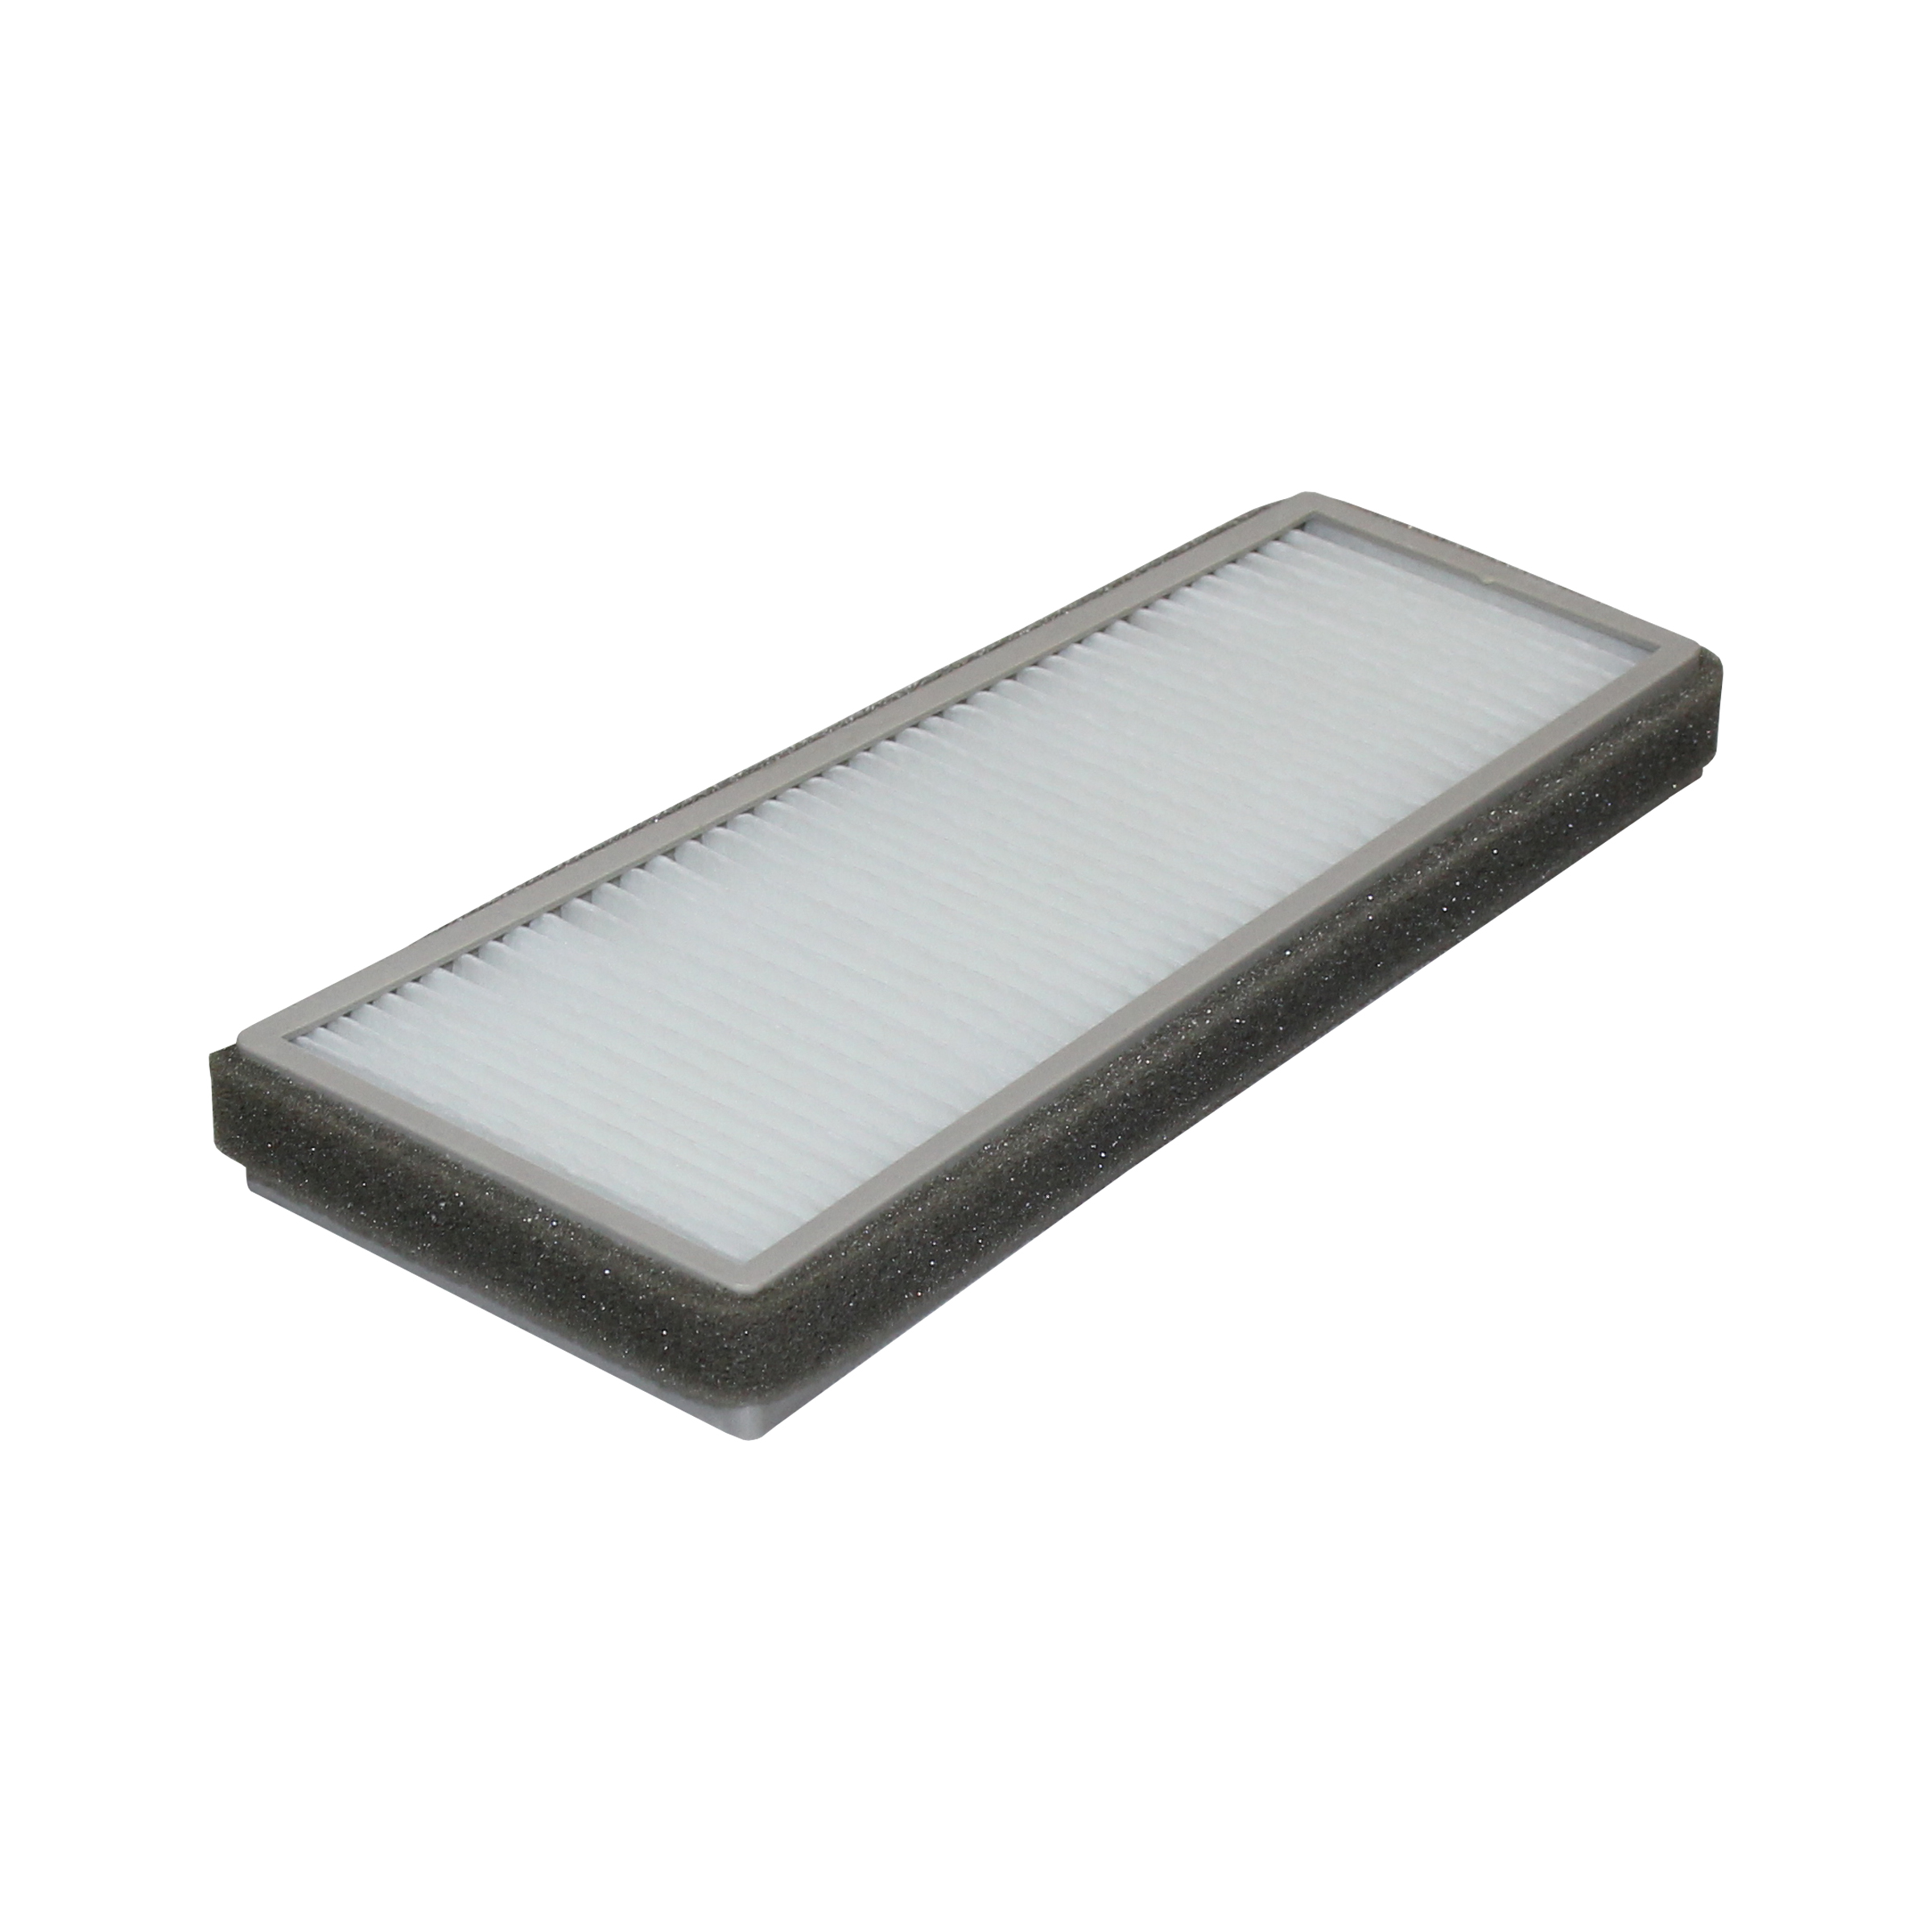 فیلتر کابین خودرو آرو مدل AF - 501403 مناسب برای رانا